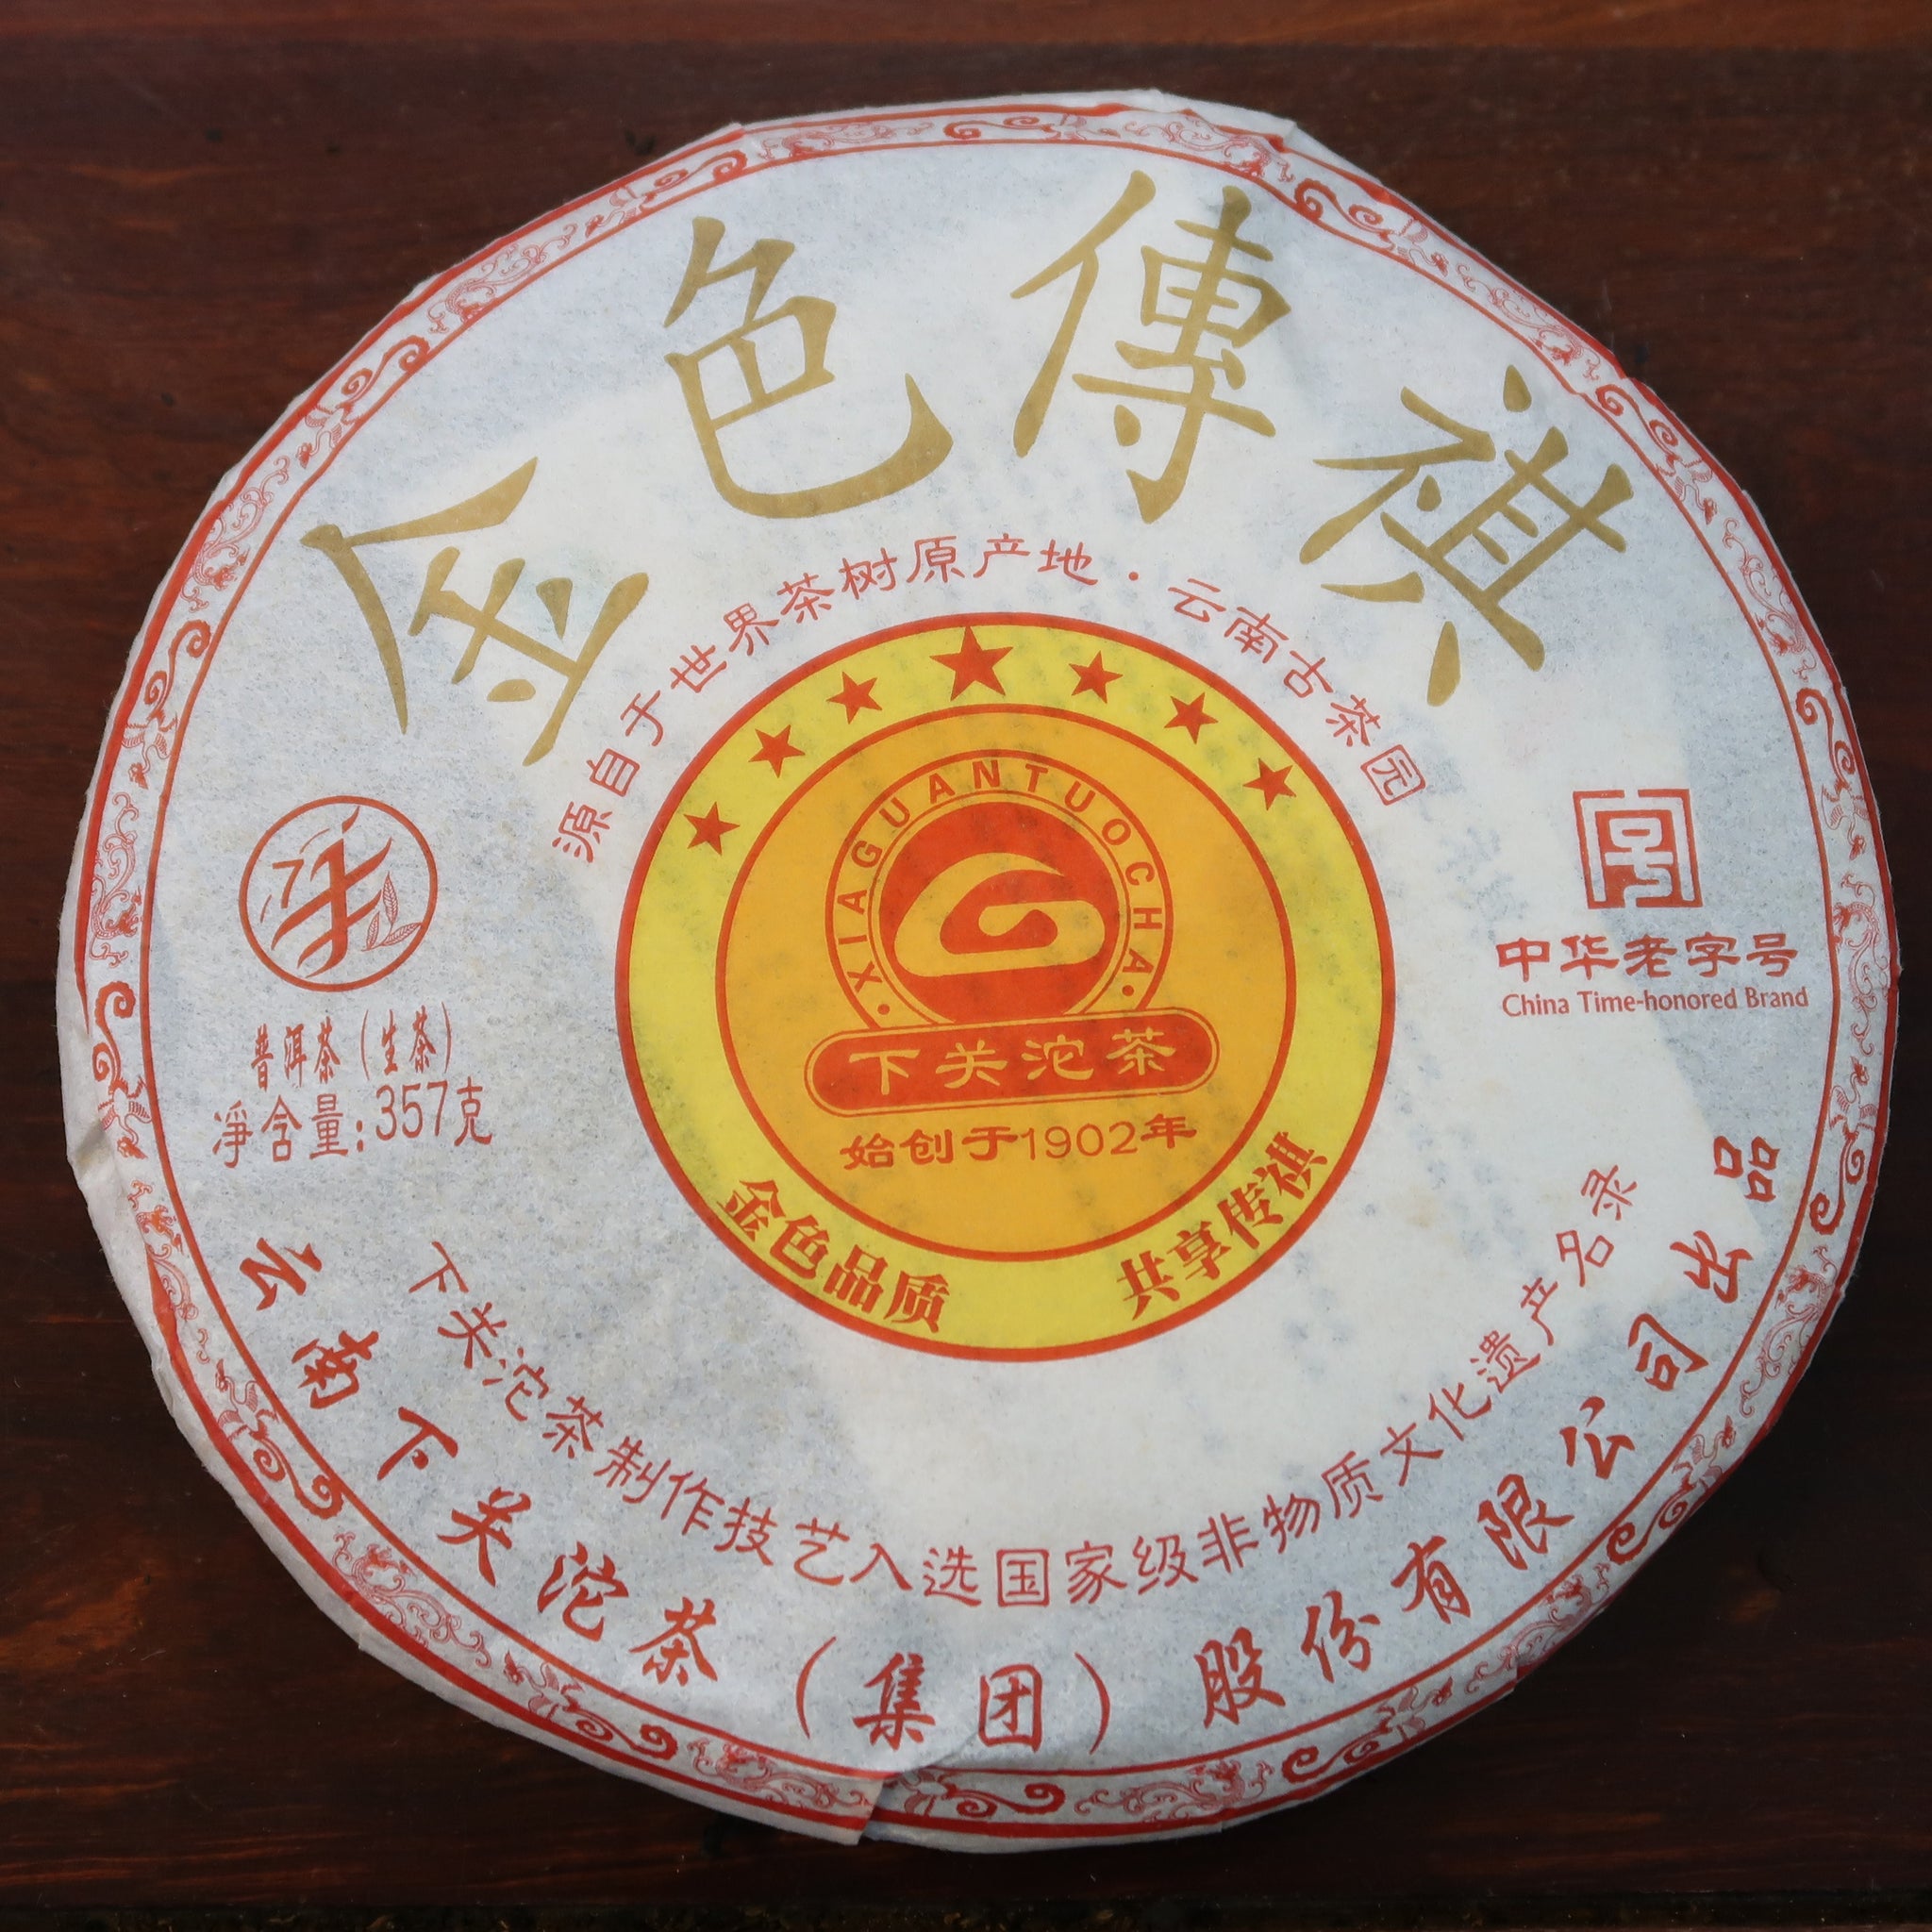 2011 Xiaguan Jin Se Chuan Qi (Golden Legend) Raw Puerh Tea